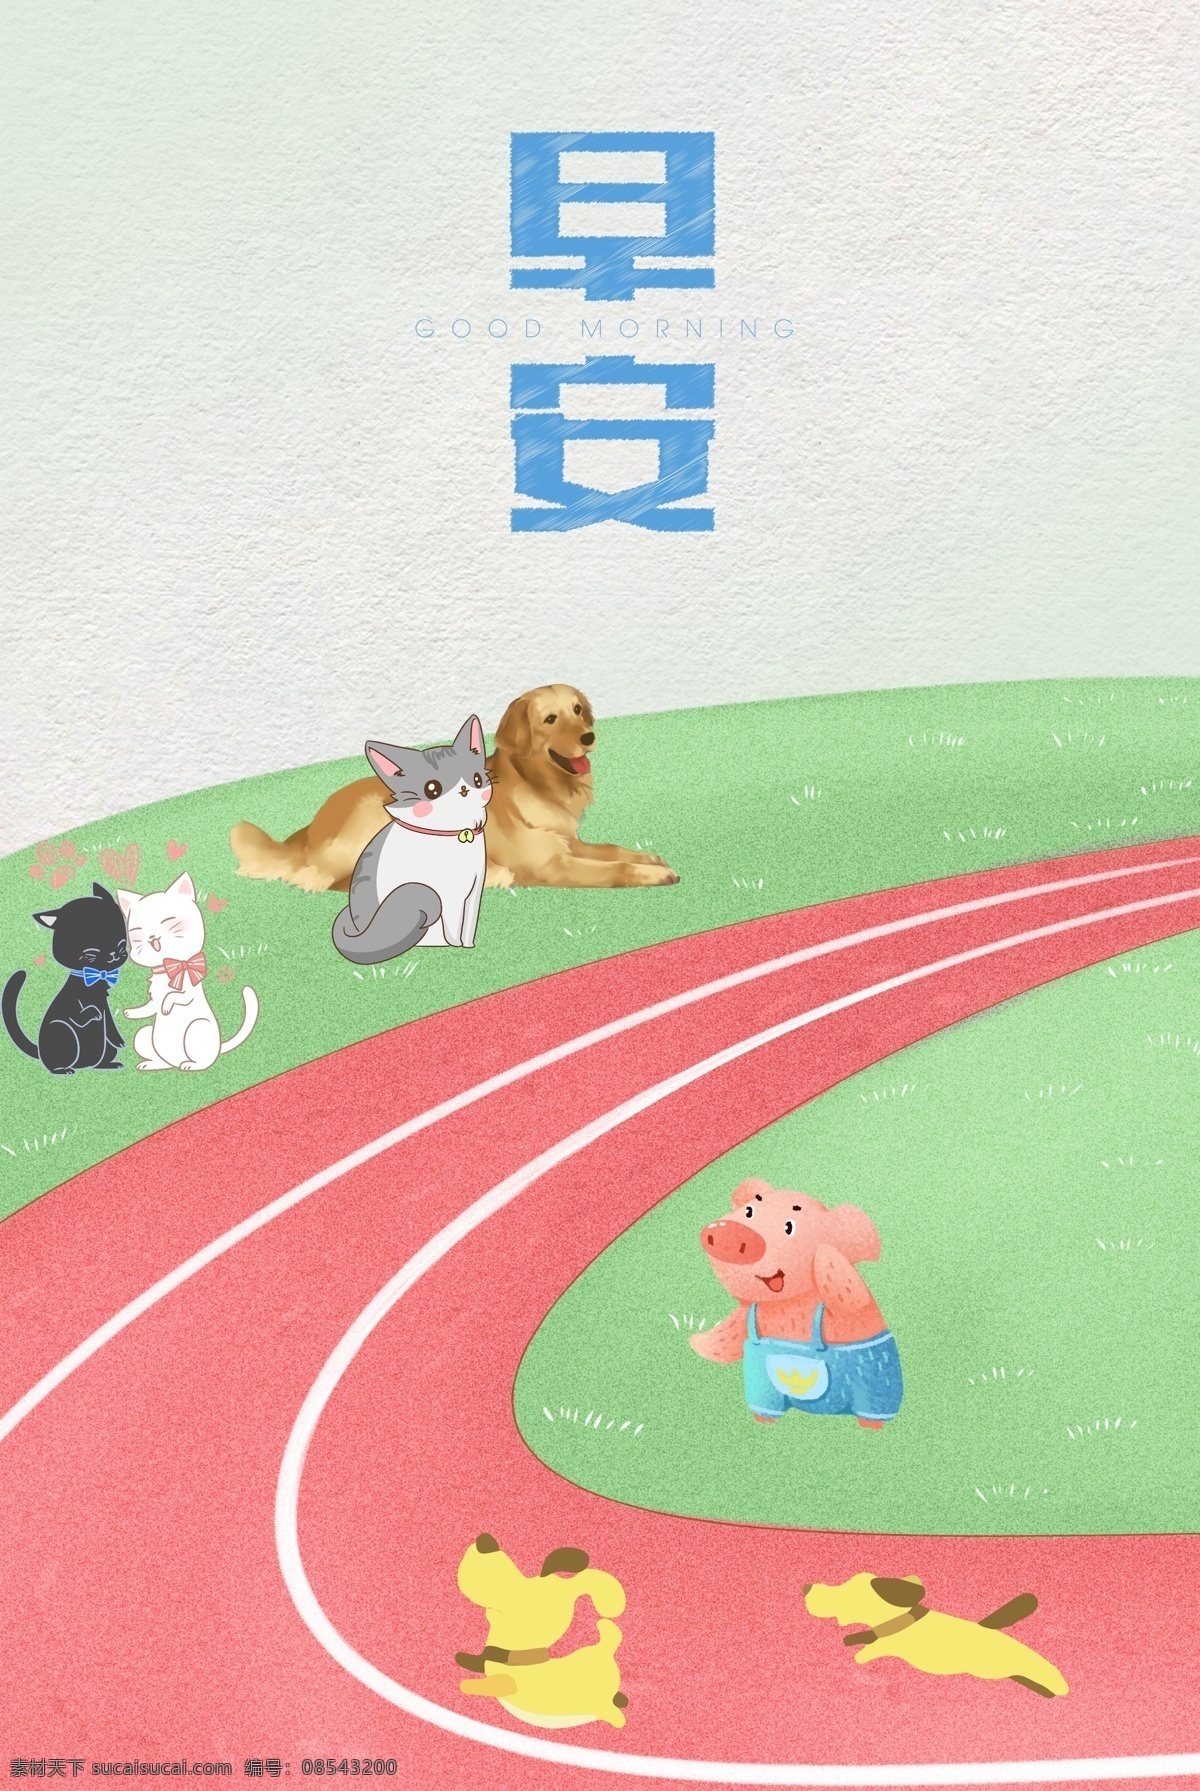 小 宠物 操场 比赛 早安 背景 图 体育场 小狗 猪 猫咪 奔跑 背景图 海报